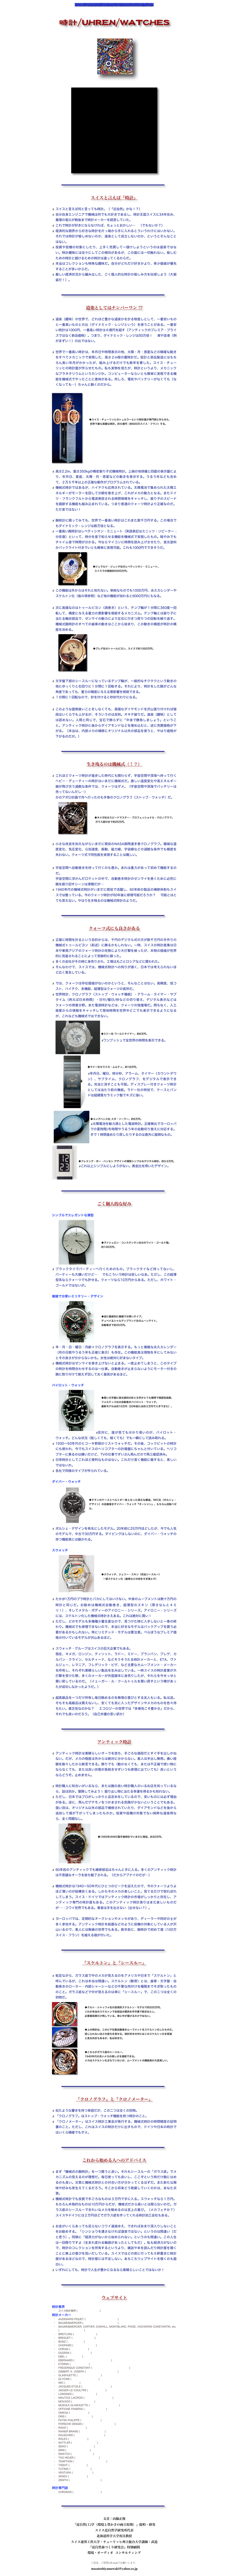 ￼

時計/UHREN/WATCHES

　￼

￼

￼

スイスと言えば『時計』

スイスと言えば何と言っても時計。（『近自然』かな！？）
自分自身エンジニアで機械は何でも大好きであるし、時計王国スイスに34年住み、義理の祖父が戦後まで時計メーカーを経営していた。
これで時計が好きにならなければ、ちょっとおかしい…　（でもないか？）
経済的な限界から好きな時計を片っ端から手に入れるとういうわけにはいかない。それでは時計が愉しめないのか、道楽として成立しないのか、というとそんなことはない。
投資や投機の対象にしたり、上手く売買して一儲けしようというのは道楽ではない。時計趣味には往々にしてこの傾向があるが、この面には一切触れない。愉しむための時計と儲けるための時計は違ってくるからだ。
本当はコレクションも特殊な趣味だ。自分がどれだけ好きかより、希少価値が優先することが多いからだ。
厳しい経済状況から編み出した、ごく個人的な時計の愉しみ方を伝授しよう（大袈裟だ！）。

￼

道楽としてはナンバーワン !?

道楽（趣味）の世界で、どれほど豊かな道楽かを計る物差しとして、一番安いものと一番高いものとの比（ダイナミック・レンジという）を使うことがある。一番安い時計は1000円、一番高い時計は６億円を超す（アンティックのプレミア・プライスではなく新品価格）。つまり、ダイナミック・レンジは50万倍！　車や芸者（例がまずい！）の比ではない。 
世界で一番高い時計は、年月日や時間表示の他、太陽・月・惑星などの精確な動きをすべてメカニックで実現した、高さ２m程の置時計だ。設計と部品製造にはもちろん長い年月がかかったが、組み上げるだけでも数年を要した。スイス・チューリッヒの時計屋が作らせたもの。私も実物を見たが、時計というより、メカニックなプラネタリウムというカンジか。コンピューターならいとも簡単に実現できる機能を機械式でやったことに意味がある。何しろ、電気やバッテリーがなくても（なくなっても…）ちゃんと動くのだから。
	
￼






     ◆スイス・チューリッヒのトュルラーという時計屋が専門家に作らせた、
      世界で最も高額な時計。約６億円（約600万スイス・フラン）する。
      








高さ2.2m、重さ350kgの精密振り子式機械時計。上端の地球儀と四面の表示盤により、年月日、星座、太陽・月・惑星などの動きを表示する。うるう年なども含めて、２万５千年以上の正確な動作がプログラムされている。
機械式時計ではあるが、ハイテクも応用されている。太陽電池で集められた太陽エネルギーがモーターを回して分銅を巻き上げ、これがメカの動力となる。またドイツ・フランクフルトから電波発信される時間情報をキャッチし、振り子のスピードを調節する機能も組み込まれている。つまり普通のクォーツ時計より正確なのだ。ただ者ではない！ 
腕時計に限ってみても、世界で一番高い時計はこれまた数千万円する。この場合でもダイナミック・レンジは数万倍となる。
一番高い腕時計はレペティシオン・ミニュート（英語表記はミニッツ・リピーター : 分反復）といって、時分を音で知らせる機能を機械式で実現したもの。暗やみでもチャイム音で時間が分かる。今ならマイコンに時間を読み上げさせたり、蛍光塗料かバックライト付きでいとも簡単に実現可能。これも1000円でできそうだ。
￼

    ◆ジェラルド・ジェンタ社のレペティシオン・ミニュート。
      スイスでの価格約5000万円。


この機能は外からはそれと知れない。単純なものでも1000万円、永久カレンダーやスケルトン化（後の項参照）など他の機能が加わると6000万円にもなる。
	
次に高価なのはトゥールビヨン（渦巻き）という、テンプ輪が１分間に360度一回転して、精度に与える重力の悪影響を相殺するメカニズム。テンプ輪とは振り子に当たる輪状部品で、ゼンマイの動力により左右に行きつ戻りつの回転を繰り返す。機械式腕時計のすべての歯車の動きはここから始まり、この動きの精度が時計の精度を決める。
	￼
 
    ◆ブレゲ社のトゥールビヨン。スイスで約1000万円。




文字盤下部のシースルーになっているテンプ輪が、一般的なチクタクという動きの他にゆっくりと右回りに１分間に１回転する。それにより、時計をした腕がどんな角度であっても、重力の精度に与える悪影響を相殺できる。
１分間に１回転なので、針を付けると秒針代わりになる。

このような面倒臭いことをしなくても、高価なダイヤモンドを沢山張り付ければ値段はいくらでも上がるが、そういうのは反則。オキテ破りだ。道楽（趣味）としては認めない。人間と同じで、宝石で飾らずに「中身で勝負しましょう」ということ。アンティック時計に後からダイアモンドなどを埋め込むと、逆に売買価格が下がる。（本当は、内部メカの補修にオリジナル以外の部品を使うと、やはり価格が下がるのだが。）

￼

生き残るのは機械式（！？）

これほどクォーツ時計が進歩した時代にも関わらず、宇宙空間や深海へ持って行くヘビー・デューティーの時計はいまだに機械式だ。激しい温度変化や高エネルギー線が飛び交う過酷な条件では、クォーツはダメ。（宇宙空間や深海でバッテリーは売ってないんだし…） かのアポロ計画で月へ行ったのも手巻のクロノグラフ（ストップ・ウォッチ）だ。
￼

      ◆オメガ社のスピードマスター・プロフェッショナル・クロノグラフ。
       ガラス底付きで約25万円。


小さな改良を加えながらいまだに現役のNASA御用達手巻クロノグラフ。極端な温度変化、気圧変化、Ｇ加速度、振動、磁力線、宇宙線などの過酷な条件でも精度を失わない。クォーツ式で同性能を実現することは難しい。
　
宇宙空間へ自動巻きを持って行くのも愚か。あれは重力があって初めて機能するのだ。 宇宙空間に浮かんだロケットの中で、自動巻き時計のゼンマイを巻くために必死に腕を振り回すシーンは滑稽だが…
1940年代の機械式時計がいまだに現役で活躍し、60年前の製品の補修体制もスイスでは整っている。今のクォーツ時計が60年後に修理可能だろうか？　可能とはとても思えない。やはり生き残るのは機械式時計のようだ。

￼

クォーツ式にも良さがある

正確に時間を計るという目的からは、千円のデジタル式の方が数千万円の手作りの機械式トゥールビヨン（前述）に勝るかもしれない。一時、スイスの時計産業は日本や東南アジアのクォーツ時計の攻勢により大打撃を被ったが、本物の価値が世界的に見直されることによって奇跡的に蘇った。
多くの会社がその時に身売りされ、工場は丸ごとロシアなどに買われた。
そんなわけで、スイスでは、機械式時計への拘りが強く、日本では考えられないほど広く普及している。 
では、クォーツは存在価値がないのかというと、そんなことはない。高精度、低コスト、ハイテク、多機能、超薄型はクォーツの長所だ。
世界時計、クロノグラフ（ストップ・ウォッチ機能）・アラーム・タイマー・サブタイム（例えば日本時間）・日付/曜日/秒などの切り替え、デジタル表示などはクォーツの得意分野。また電波時計などは、クォーツの独壇場だ。間もなく、人工衛星からの情報をキャッチして現地時間を世界中どこでも表示できるようになるが、これなども機械式ではできない。 ￼

◆ミドー社 ワールドタイマー。約6万円。
ワンプッシュで全世界の時間を表示できる。 
	￼


◆ラドー社セラミカ・ムルティ。約18万円。
年月日、曜日、時分秒、アラーム、タイマー（カウントダウン）、サブタイム、クロノグラフ、をデジタルで表示できる。完全に消すことも可能。ディスプレー付きクォーツ時計としては当たり前の機能。ラドー社の特技で、ケースとバンドは超硬質セラミック製でキズに強い。 

    ￼
◆ユングハンス社 メガ・ソーラー。約5万円。
太陽電池を動力源とした電波時計。正確無比でヨーロッパでの夏時間/冬時間やうるう年の自動切り替えに対応する。手で１時間進めたり戻したりするのは意外に面倒なもの。

￼

◆フレミング・ボー・ハンセン デザインの薄型シンプルなデジタル時計。約3.5万円。
これ以上シンプルにしようがない。黄金比を用いたデザイン。


￼

ごく個人的な好み

シンプルでエレガントな薄型
	￼


       ◆ヴァシェロン・コンスタンタン社のホワイト・ゴールド製。
       約100万円。 



ブラックタイでパーティーへ行くためのもの。ブラックタイなど持ってないし、パーティーも大嫌いだけど…　でもこういう時計は欲しいなあ。ただし、この超薄型系ならクォーツでも許せる。クォーツなら10万円からある。ただし、ホワイト・ゴールドではないが。

複雑で分厚いミリタリー・デザイン
￼

       ◆逆に徹底的に複雑で分厚いタイプ。
       デュベイ＆シャルデンブランド社のムーンデイト。
       自動巻きで約25万円。


年・月・日・曜日・月齢＋クロノグラフを表示する。もっと複雑な永久カレンダー（月の日数やうるう年も正確に表示）も存在。この機能美は現物を手にしてみないとその良さが分からないかも。女性は絶対に好まないタイプ。
機械式時計はゼンマイを巻き上げないと止まる。一度止めてしまうと、このタイプの時計を時間合わせするのは一仕事。自動巻きが止まらないようにモーター付きの腕に取り付けて絶えず回しておく器具があるほど。

パイロット・ウォッチ
￼
       ◆黒い文字盤に蛍光塗料の針と文字がとても精悍で視認性抜群。
       フォルティス社の自動巻きパイロット・ウォッチ。
       最新モデルは約10万円（20年前には約３万円で入手できた）。



反対に、誰が見ても分かり易いのが、パイロット・ウォッチ。どんな状況（眩しくても、暗くても）でも一瞬にして読み取れる。
1930～50年代のヒコーキ野郎のリストウォッチだ。その後、コックピットの時計にも使われ、今でもスイスのヘリコプターの計器盤にちゃんと付いている。ヘリコプターに乗るのは嫌いだけど、TVの仕事でずいぶん飛んだので再三確認済み。
日常時計としてこれほど便利なものはない。これだけ潔く機能に徹すると、美しいではないか。
各社で同様のタイプが作られている。

ダイバー・ウォッチ
￼

◆チタンのケースとベルトが一体となった頑丈な構造。IWC社（ポルシェ・デザイン）の自動巻きダイバー・ウォッチ『オーシャン』。もちろん回転ベゼル。



ポルシェ・デザインを有名にしたモデル。20年前に25万円ほどしたが、今でも人気のモデルで、中古で30万円する。ダイビングはしないのに、ダイバー・ウォッチの持つ機能美には魅かれる。

スウォッチ
￼


       ◆スウォッチ、ジェリー・スキン（完全シースルー）
　　　一部スケルトン化（歯車などの肉をそぎ落とす）


たかが１万円のプラ時計とバカにしてはいけない。中身のムーブメントは数十万円の時計と同じだ。お勧めは機械式自動巻き、超薄型のスキン（厚さなんと４ミリ！）、そしてメタル・ボディーのアイロニー・シリーズ。アイロニー・シリーズには、スケルトン化した機械式時計さえある。これは絶対に買い！
ただし、どのモデルも多機種少量生産なので、見つけた時に入手しないと一巻の終わり。機械式でも修理できないので、本当に好きなモデルはバックアップを買う必要があるかもしれない。特にリミテッド・モデルは要注意。べらぼうなプレミア価格の付いているモデルが沢山あるほど。

スウォッチ・グループはスイスの巨大企業でもある。 現在、オメガ、ロンジン、ティソット、ラドー、ミドー、ブランパン、ブレゲ、カルバン・クライン、セルティーナ、などそうそうたる時計メーカーと、ETA、ヴァルジュー、レマニア、フレデリック・ピゲ、など主要な大ムーブメント・メーカーを所有し、それぞれ素晴らしい製品を生み出している。一時スイスの時計産業が大打撃を受けた際、多くのメーカーが外国資本に身売りしたが、それらを今せっせと買い戻しているのだ。（イェーガー・ル・クールトゥルを買い戻すという噂があったが成功しなかったようだ。）

超高級品を一つだけ所有し毎日眺めるのを無情の喜びとする友人もいる。私は逆。そもそも高級品は買えないし、安くても気に入ったデザインやメカのものを色々持ちたい。貧乏性なのかな？　エコロジーの世界では『多様性こそ豊かさ』だから、それでも良いのだろう。（自己弁護の言い訳か）

￼

アンティック時計

アンティック時計は素晴らしいオーラを放ち、手ごろな値段だとすぐ手を出しかねない。だが、メカの程度は外からは絶対に分からない。素人は手出し無用。痛い経験を散々したから断言できる。飾りでも（動かなくても、または不正確で使い物にならなくても、または良い状態が長続きせずいつも修理に出ていても）良いというならどうぞ。止めません。 
時計職人に知合いがいるなら、または腕の良い時計職人のいるお店を知っているなら、話は別か。冒険してみよう！ 掘り出し物に当たる幸運を得るかも知れない。
ただし、日本ではプロがしっかりと品定めをしているので、安いものには必ず理由がある。逆に、飛んだゲテモノをつかまされる危険が少ないということでもある。狙い目は、オリジナル以外の部品で補修されていたり、ダイアモンドなどを後から追加して値が下がってしまったものか。投資や投機の対象でない純粋な道楽用なら、全く問題なし。
￼
	
       ◆1950年のIWC製手巻時計でいまだに現役。約30万円。




60年前のアンティックでも補修部品はちゃんと手に入る。多くのアンティック時計は不思議なオーラを放ち魅了される。（だからアブナイのだが…） 
機械式時計は1940～50年代にひとつのピークを迎えたので、今のクォーツよりよほど薄いのが結構安くある。しかもそのメカの美しいこと。見てるだけで惚れぼれしてしまう。スイス・ドイツではアンティック時計の市場がしっかりと存在し、アンティック専門の時計屋もある。このアンティック時計漁りはまた楽しいものだが‥‥コワイ世界でもある。筆者は手を出さない（出せない？）。 
ヨーロッパでは、定期的なオークションやメッセがあり、ディーラーや同好の士が多く参加する。アンティック時計を絵画などのように投機の対象にしている人が沢山いるので、素人には無縁の世界でもある。数年前に、腕時計で初めて億（100万スイス・フラン）を越える値が付いた。

￼

『スケルトン』と『シースルー』

蛇足ながら、ガラス底で中のメカが見えるのをアメリカや日本で「スケルトン」と呼んでいるが、これは本当は間違い。スケルトン（骸骨）とは、歯車・文字盤・自動巻きのローター・内部シャーシーなどの不要な肉付けを極限までそぎ取ったもののこと。ガラス底などで中が見えるのは単に「シースルー」で、この二つは全くの別物だ。
￼
      ◆クルト・シャッフォ社の芸術的スケルトン・モデルで約200万円。
      これが本当のスケルトンで各部品の贅肉を手作業で削ぎおとし、
      必要最低限だけ残している。単に中が覗けるだけではない。


      ◆上の時計は、このピゲ社製自動巻きムーブメントをスケルトン化したものだ。
      信じられないほどの変化を見せる。時計好きの中にはこのスケルトン化を邪道
      と見る向きもあるが、私は好きだ。


      ◆こちらがガラス底のシースルー。
      1940年代の古いメカの美しさを堪能できる。
      メカはスケルトン化されていないが、ムーブメントの機能美が大変美しい。



￼

『クロノグラフ』と『クロノメーター』

似たような響きを持つ単語だが、この二つは全くの別物。
「クロノグラフ」はストップ・ウォッチ機能を持つ時計のこと。
「クロノメーター」はスイス時計工業会が発行する、機械式時計の時間精度の証明書のこと。ただし、これはスイスの時計だけに出すもので、ドイツや日本の時計ではいくら精確でもダメ。

￼

これから始める人へのアドバイス

まず「機械式の腕時計」を一つ買うと良い。それもシースルーの「ガラス底」でメカニズムの見えるのが理想だ。毎日使っても良いし、ここぞという時だけ腕にはめるのも良い。次第に機械式時計との付合い方が分かってくるはずだ。また新たな興味や好みも芽生えてくるだろう。そこから将来どう発展していくのかは、あなた次第。
機械式時計でも良質で手ごろなものは３万円で手に入る。スウォッチなら１万円。もちろん本格的なものは10万円からだが、機械式だから高いとは限らないのだ。ガラス底のシースルーできれいなメカを眺めるのは至上の喜び。（メカフェチか？）スイスやドイツには２万円ほどでガラス底を作ってくれる時計加工会社もある。 
お金がいくらあっても足らないコワイ道楽ゆえ、できればあまり深入りしないことをお勧めする。「シンショウを潰さなければ道楽ではない」というのは間違い（だと思う）。同様に「経済力がないから始められない」というのも間違い。この人生は一回限りですよ（生まれ変わる輪廻があったとしてもだ）。私も経済力がないので、時計のコレクションを所有するというより、雑誌や本を読んだり時計屋を覗くことに無上の喜びを見いだしている。スイスではどの街に行っても５軒置きに時計屋があるほどなので、時計屋には不足しない。あちこちウェブサイトを覗くのも面白い。
いずれにしても、時計で人生が豊かになるなら素晴らしいことではないか！

￼

ウェブサイト

時計業界
	•	スイス時計業界 (www.swisstime.ch)
時計メーカー
	•	AUDEMARS PIGUET (www.audemarspiguet.com)
	•	BAUME&MERCIER (www.baume-et-mercier.com)
	•	BAUME&MERCIER, CARTIER, DUNHILL, MONTBLANC, PIAGE, VACHERON CONSTANTIN, etc. (www.richemont.com)
	•	BREITLING (www.breitling.com)
	•	BREGUET (www.breguet.com)
	•	BUNZ (www.bunz.de)
	•	CHOPARD (www.chopard.com)
	•	CORUM (www.corum.ch)
	•	DUGENA (www.dugena.de)
	•	EBEL (www.ebel.ch)
	•	EBERHARD (www.eberhard-co-watches.ch)
	•	ETERNA (www.eterna.ch)
	•	FREDERIQUE CONSTANT (www.frederique-constant.com)
	•	GISBERT A. JOSEPH (www.joseph-watches.com)
	•	GLASHUETTE (www.glashuette.de)
	•	GLYCINE (www.glycine-watch.ch)
	•	IWC (www.iwc.ch)
	•	JACQUES ETOILE (www.jacquesetoile.com)
	•	JAEGER-LE-COULTRE (www.mjlc.com)
	•	LONGINES (www.longines.com)
	•	MAUTICE LACROIX (www.mauricelacroix.de)
	•	MOVADO (www.movado.com)
	•	MUEHLE-GLASHUETTE (www.muehle-uhren.com)
	•	OFFICINE PANERAI (www.panerai.com)
	•	OMEGA (www.omega.ch)
	•	ORIS (www.oris-watch.com)
	•	PATEK PHILIPPE (www.patek.com)
	•	PORSCHE DESIGN (www.porsche-design.com)
	•	RADO (www.rado.com)
	•	RAINER BRAND (www.rainerbrand.de)
	•	RAUSCHER (www.rauscher-time.com)
	•	ROLEX (www.rolex.com)
	•	SATTLER (www.erwinsattler.de)
	•	SEIKO (www.seiko-corp.co.jp)
	•	SINN (www.sinn-uhren.de)
	•	SWATCH (www.swatch.com)
	•	TAG HEUER (www.tagheuer.com)
	•	TEMPTION (www.temption-watches.de)
	•	TISSOT (www.tissot.ch)
	•	TUTIMA (www.tutima.com)
	•	VENTURA (www.ventura.ch)
	•	XENEX (www.xemex.ch)
	•	ZENITH (www.zenith-watches.com)

時計専門誌
	•	CHRONOS (www.webchronos.net/)

￼

文責：山脇正俊
『近自然(工)学（環境と豊かさの両立原則）』提唱・研究
スイス近自然学研究所代表　
北海道科学大学客員教授　
スイス連邦工科大学・チューリッヒ州立総合大学講師：武道
『近自然森づくり研究会』特別顧問
環境・オーディオ  コンサルティング　

ご意見、ご質問はE-mailでお願いします。
￼